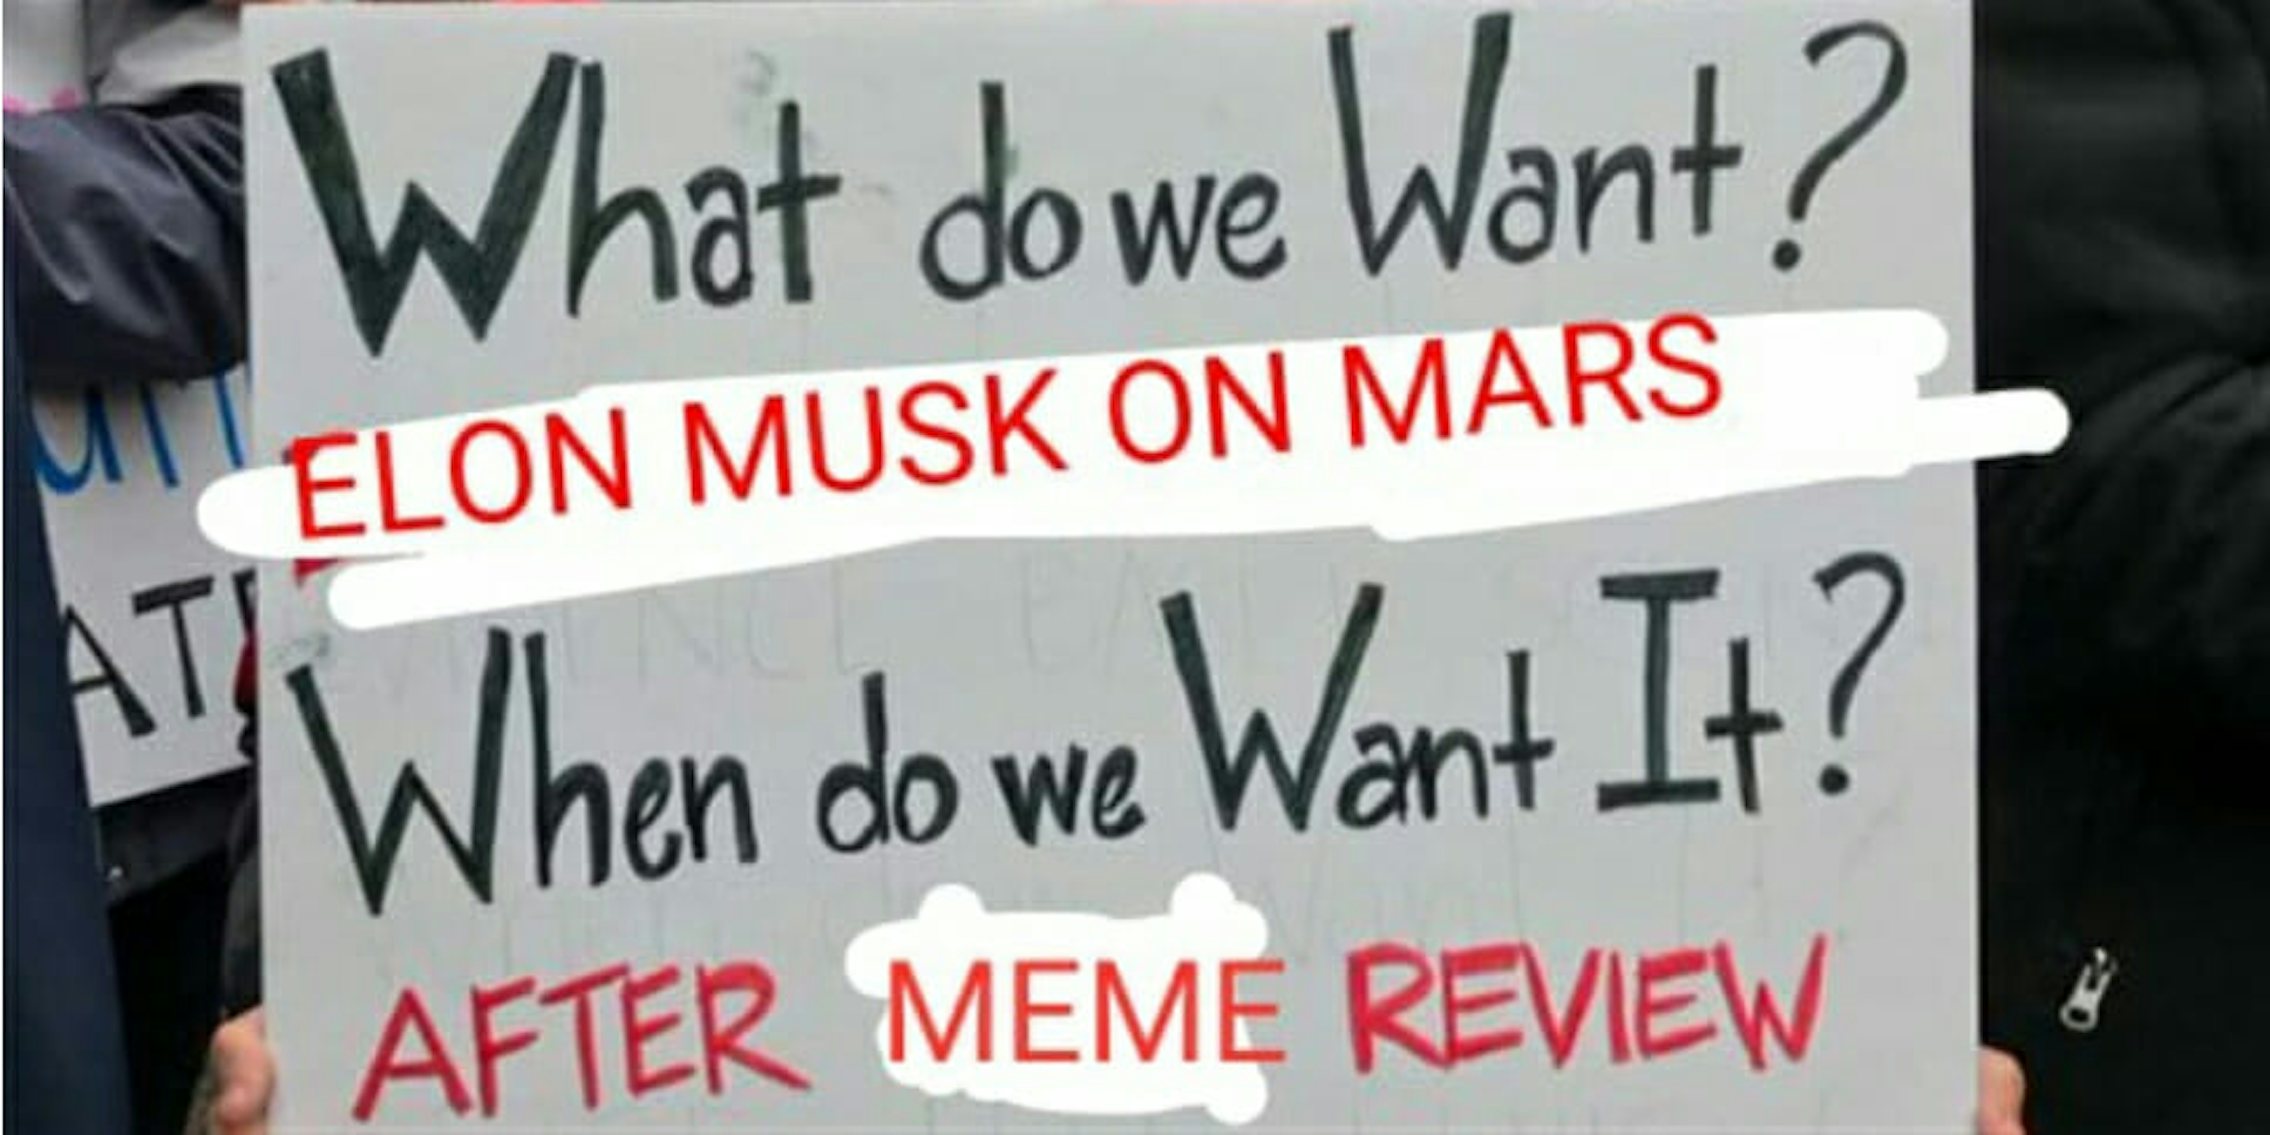 Elon Musk PewDiePie meme review